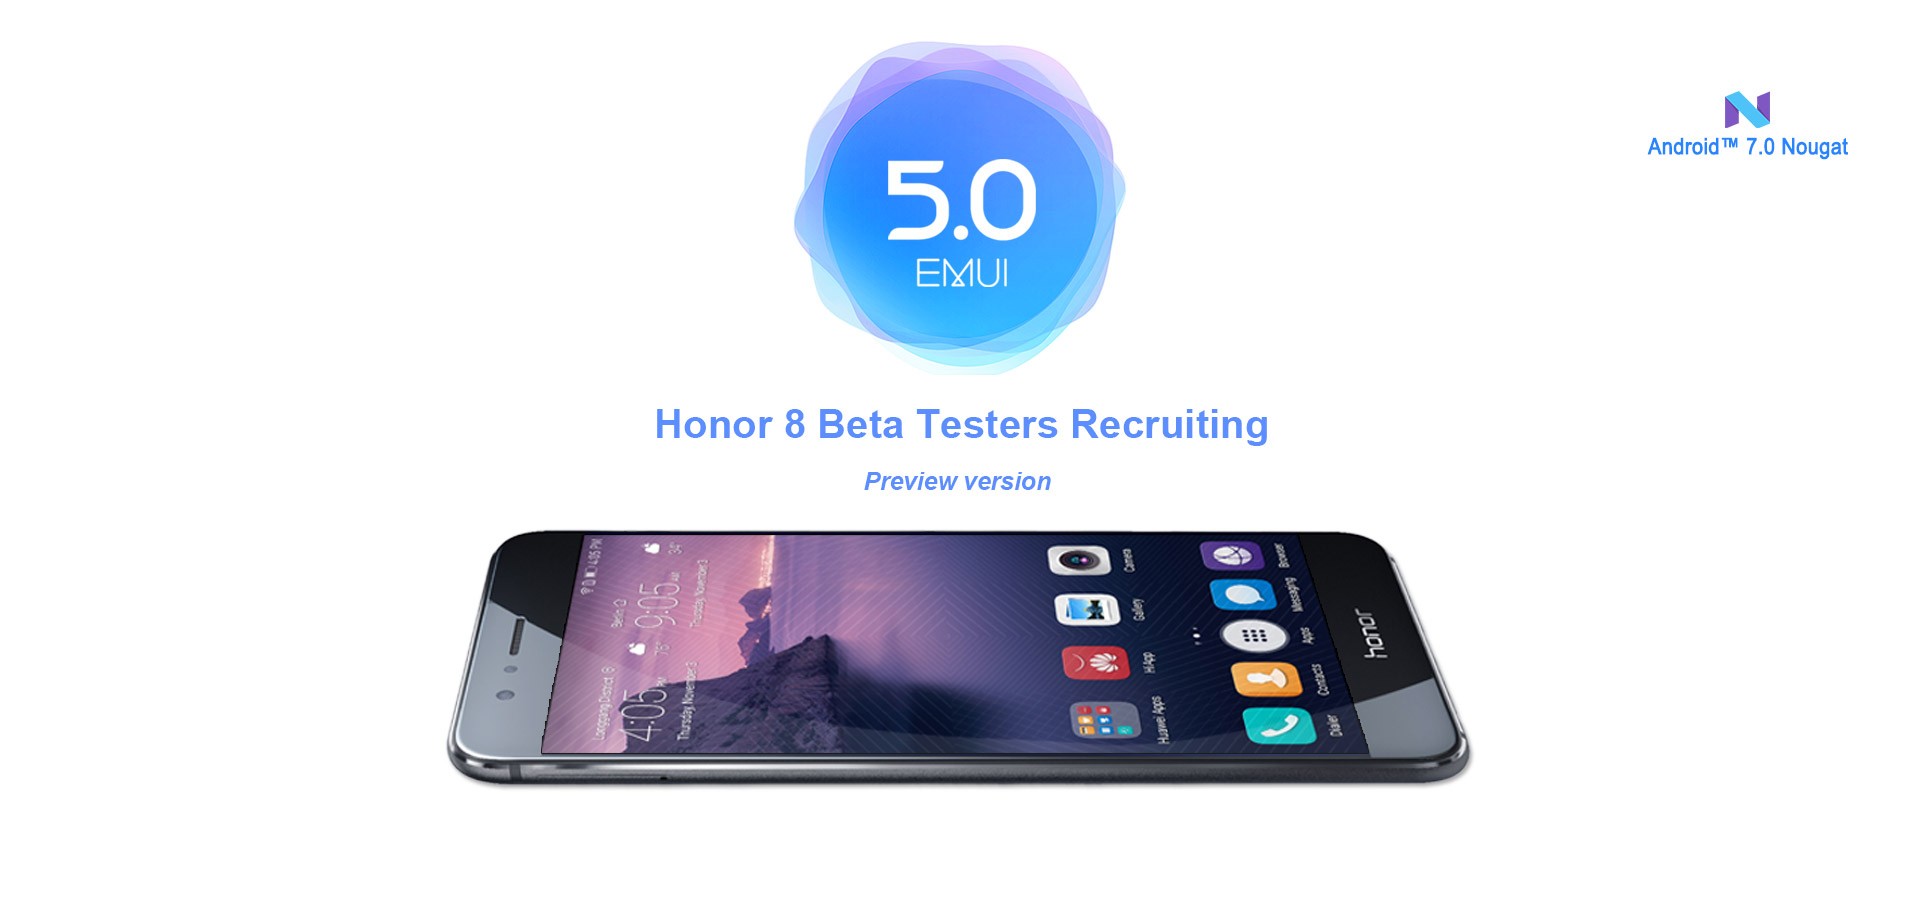 Huawei comienza las pruebas beta de la actualización Honor 8 Nougat en India